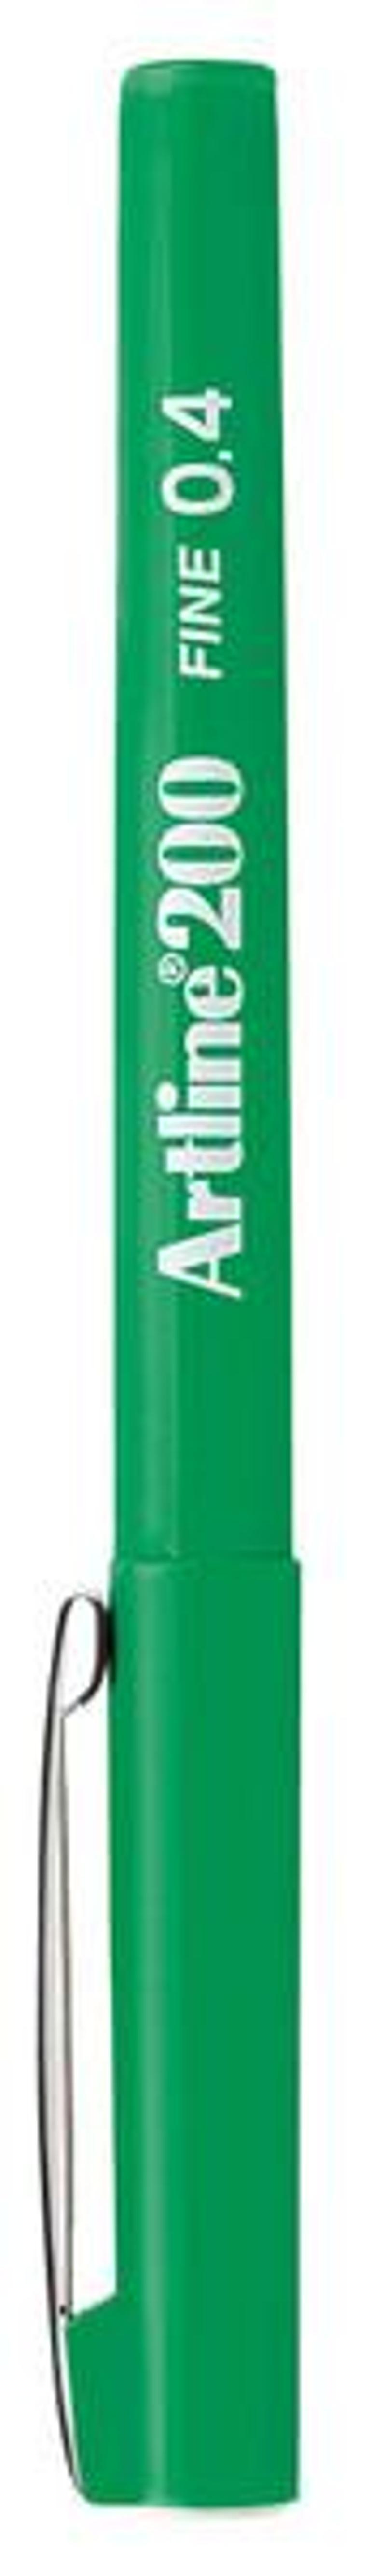 Artline Artline 200 Fine Keçe Uçlu Uç 0.4 mm Yeşil Yazı Kalemi